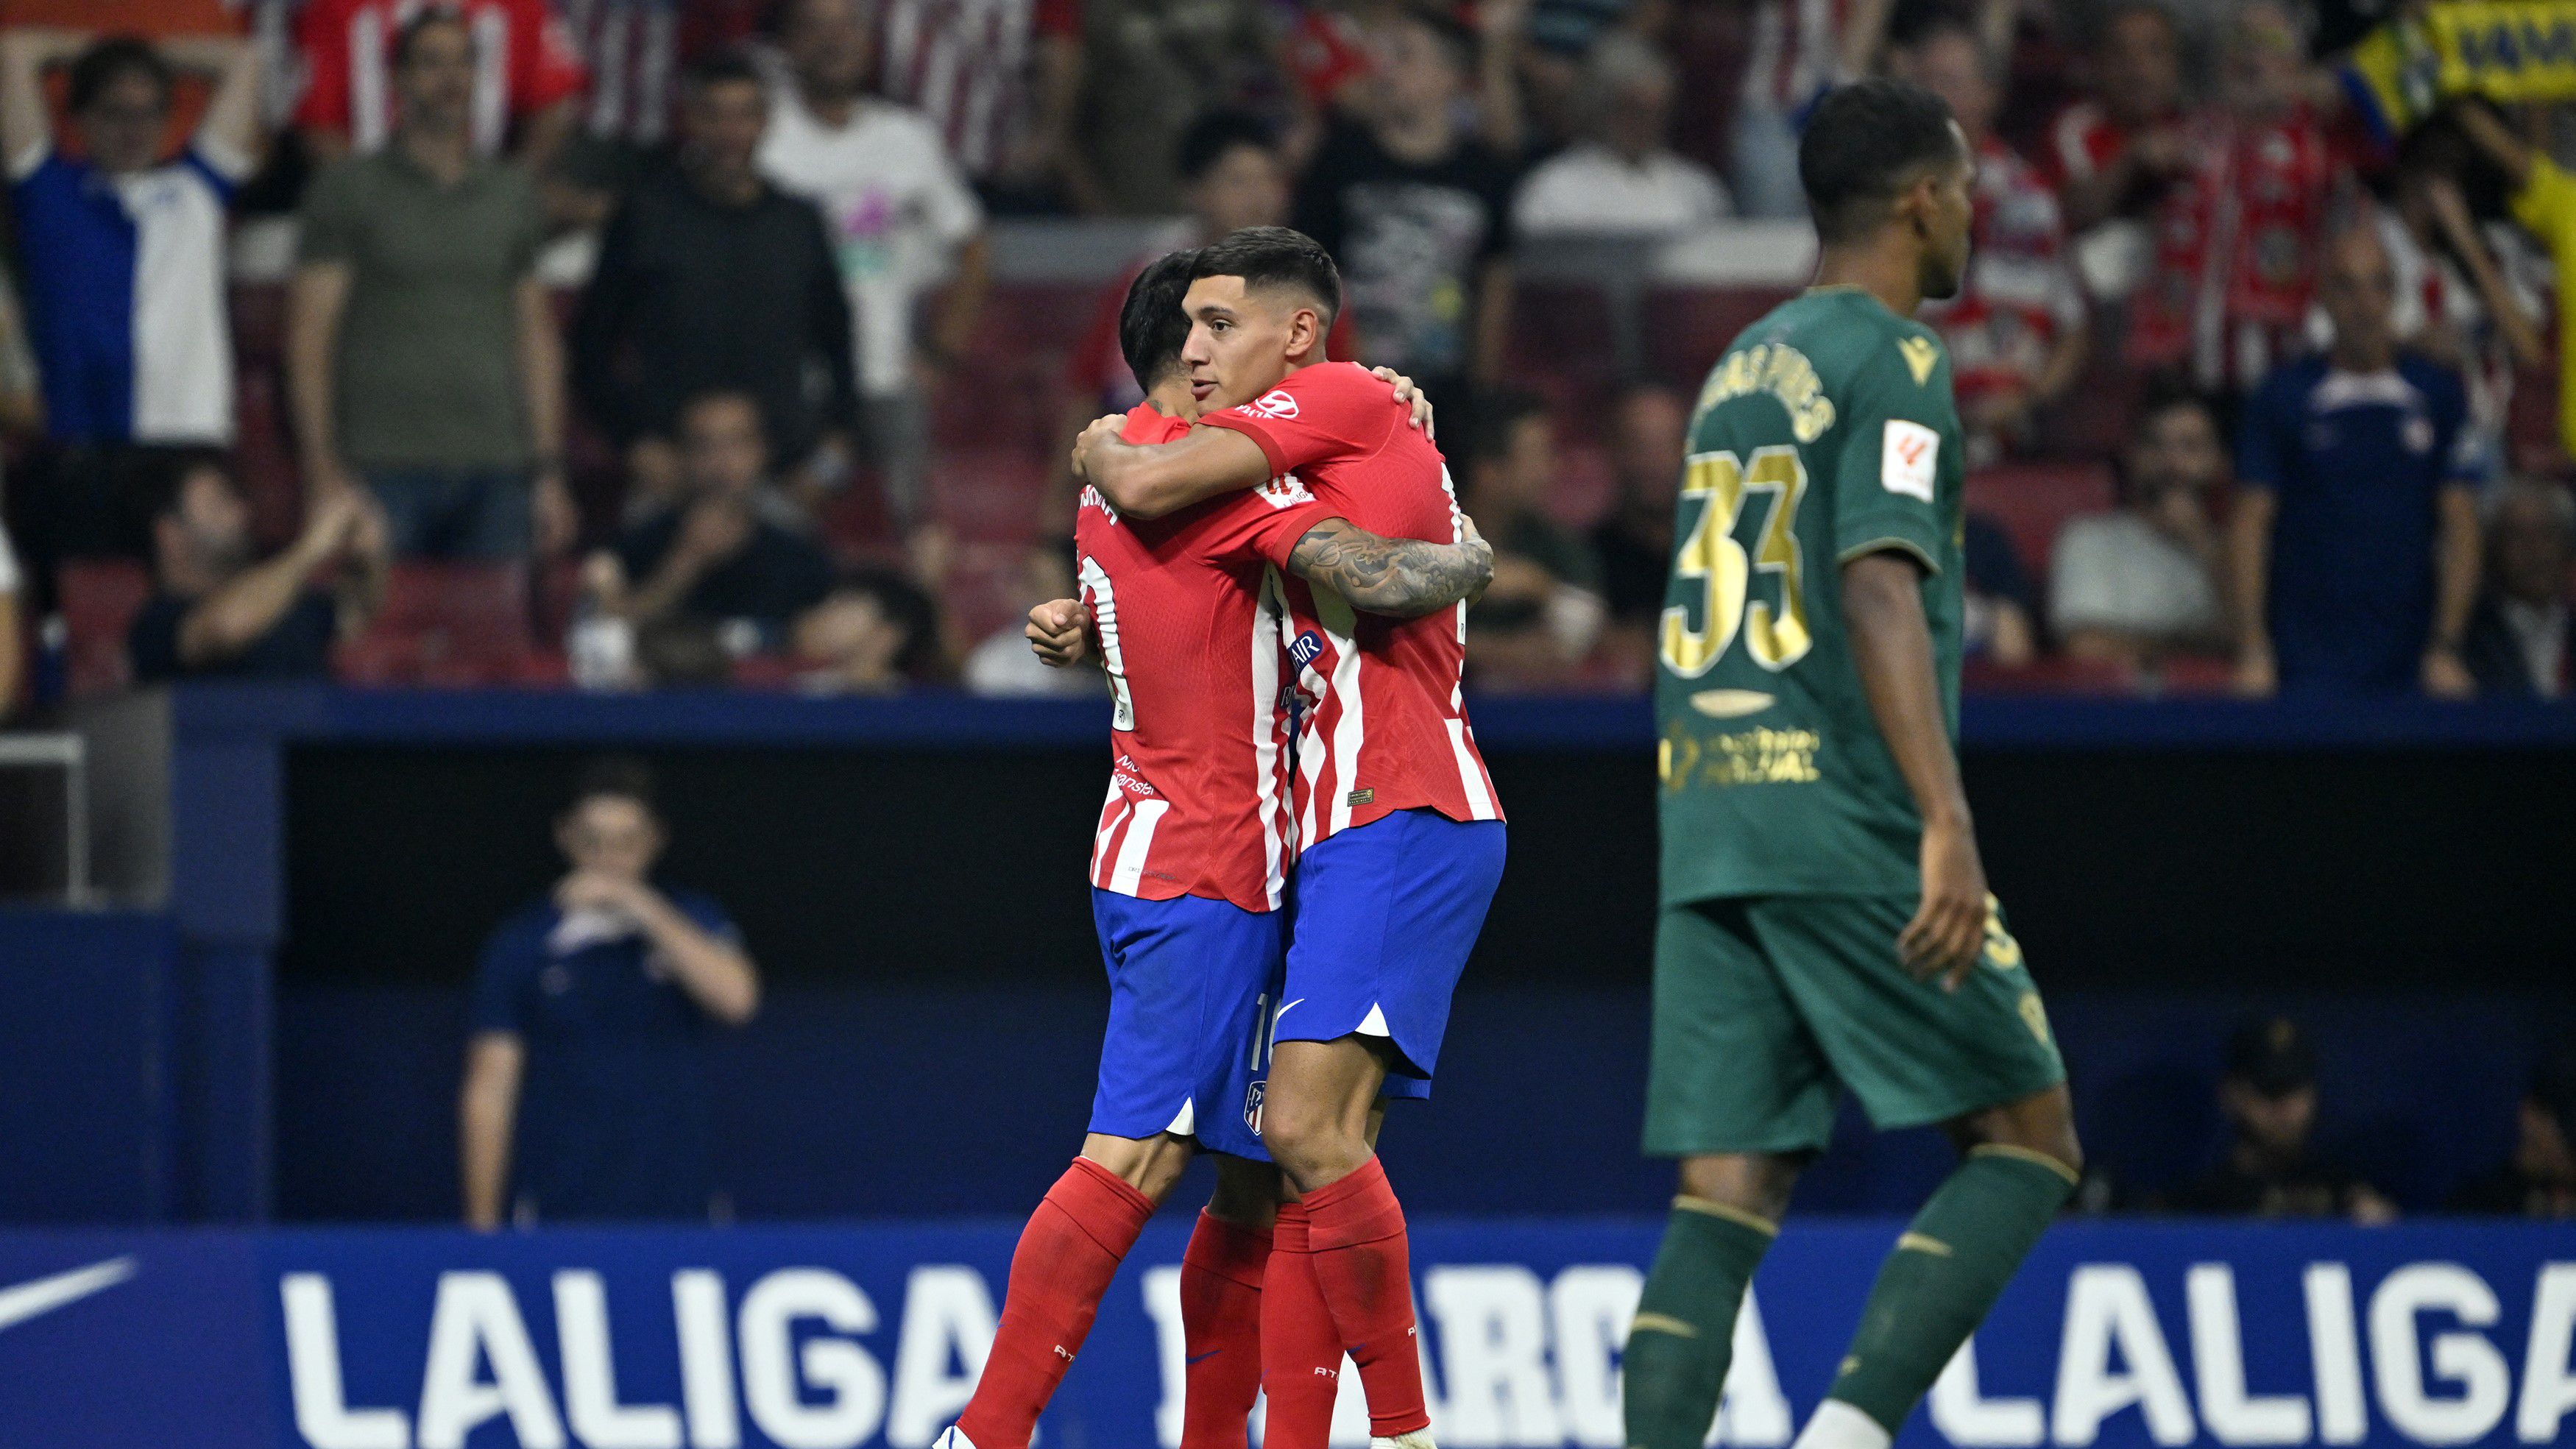 Az Atlético Madrid kétgólos hátrányban sem adta fel